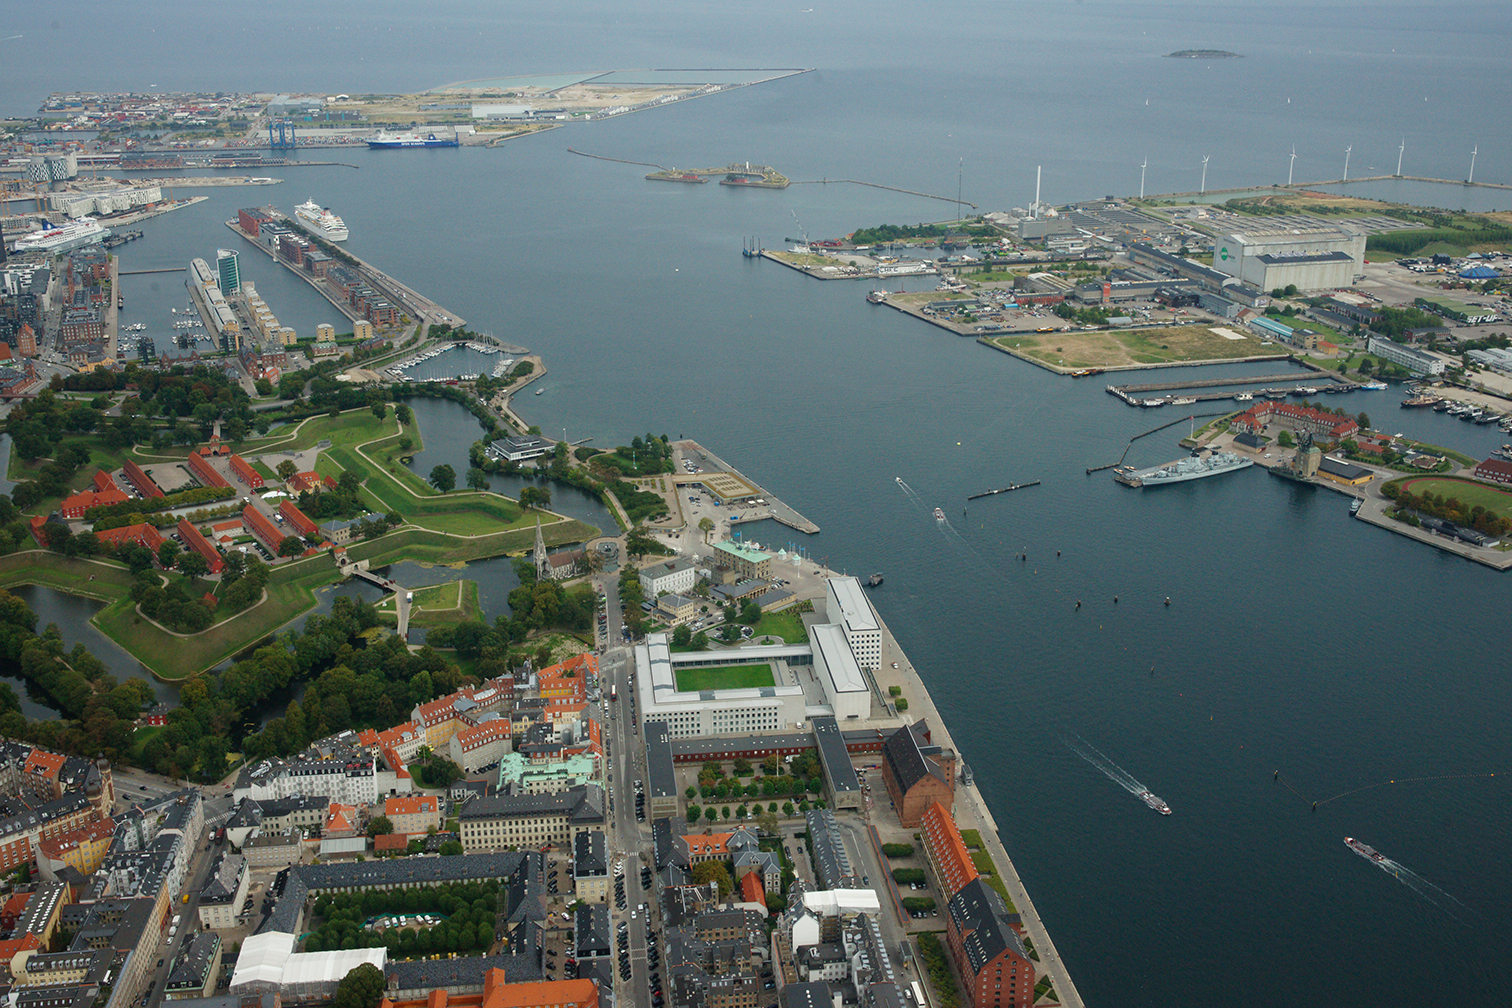 Copenhagen Harbour. Photo by Peter Symes